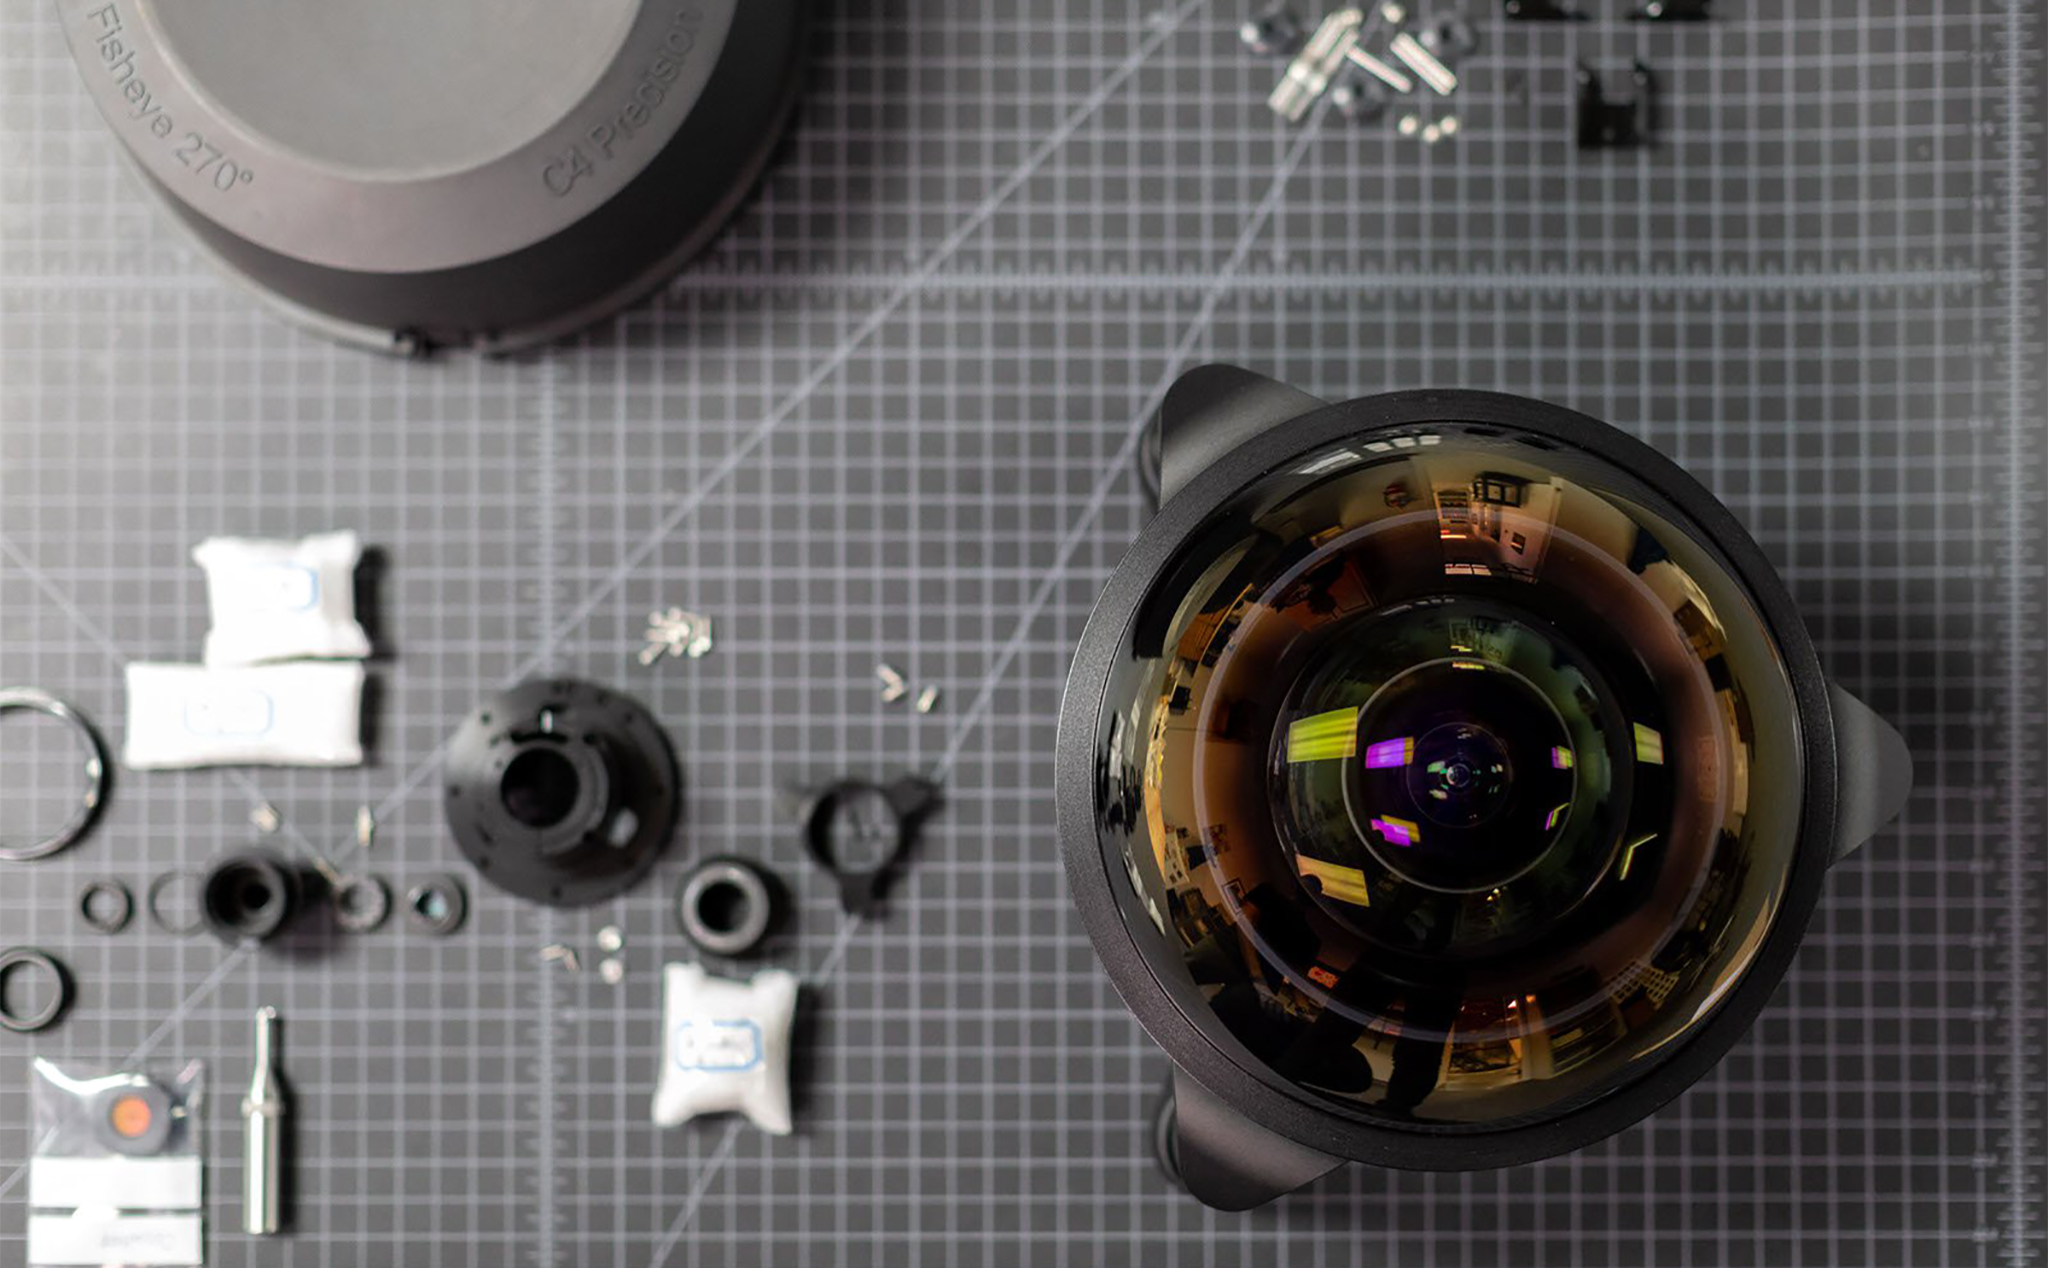 Ống kính fisheye 4.9mm góc nhìn rộng nhất thế giới 270°